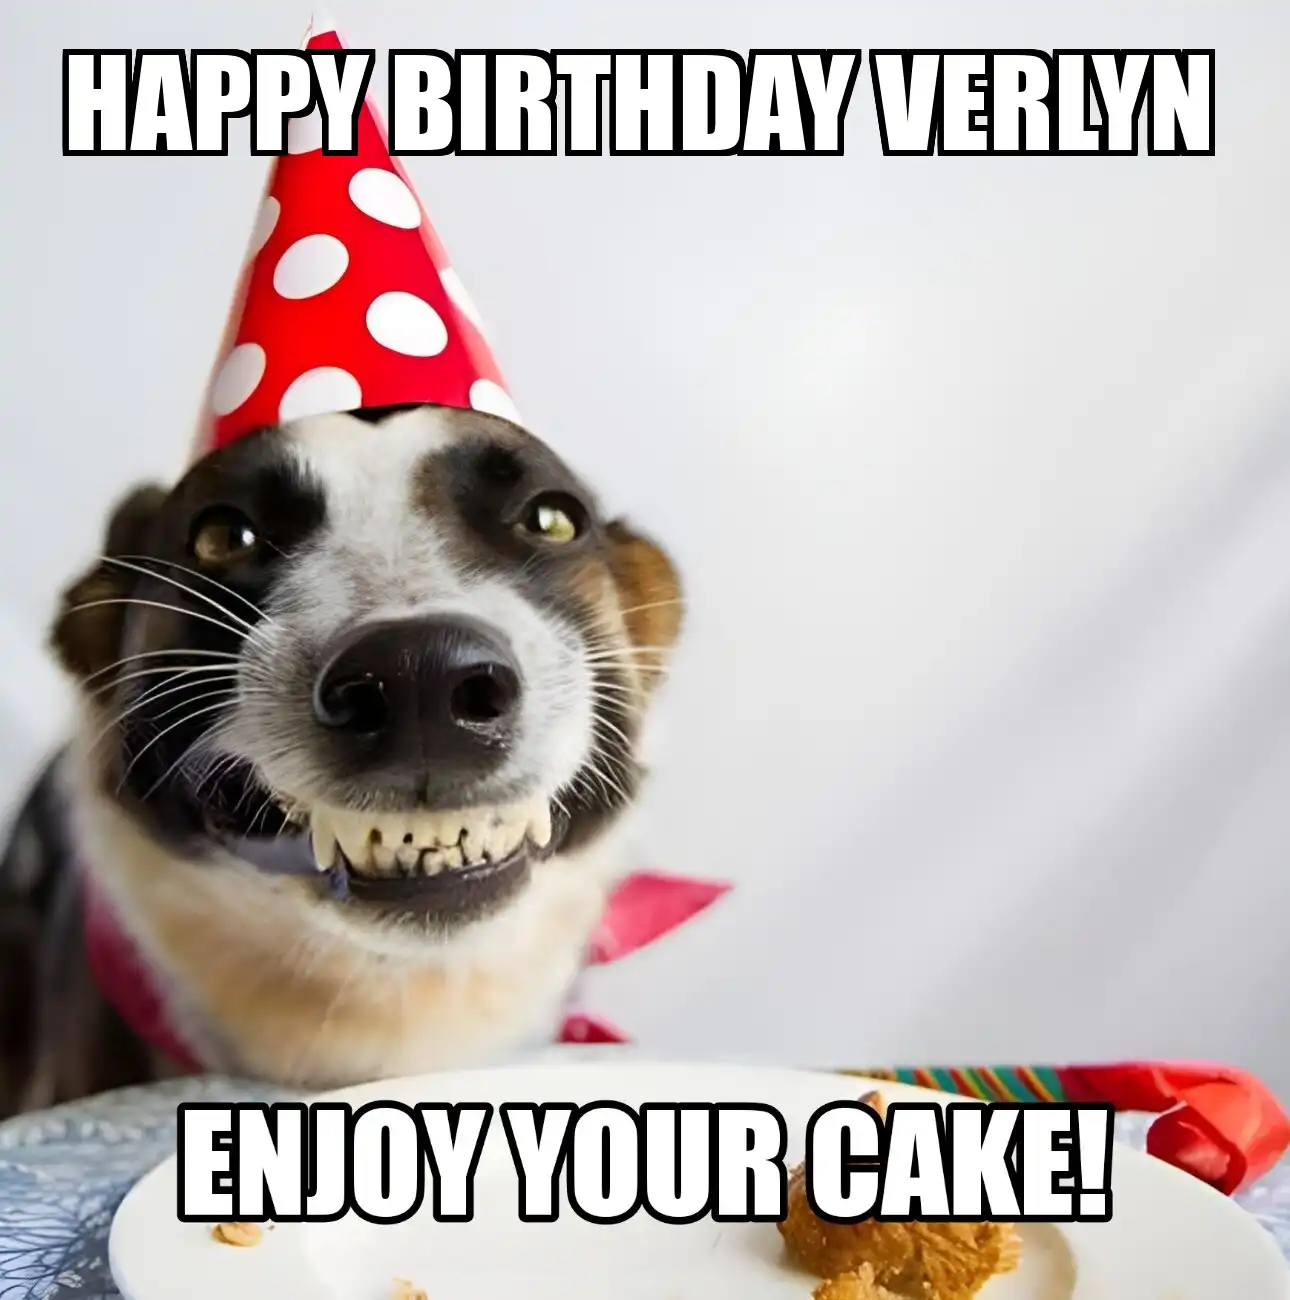 Happy Birthday Verlyn Enjoy Your Cake Dog Meme